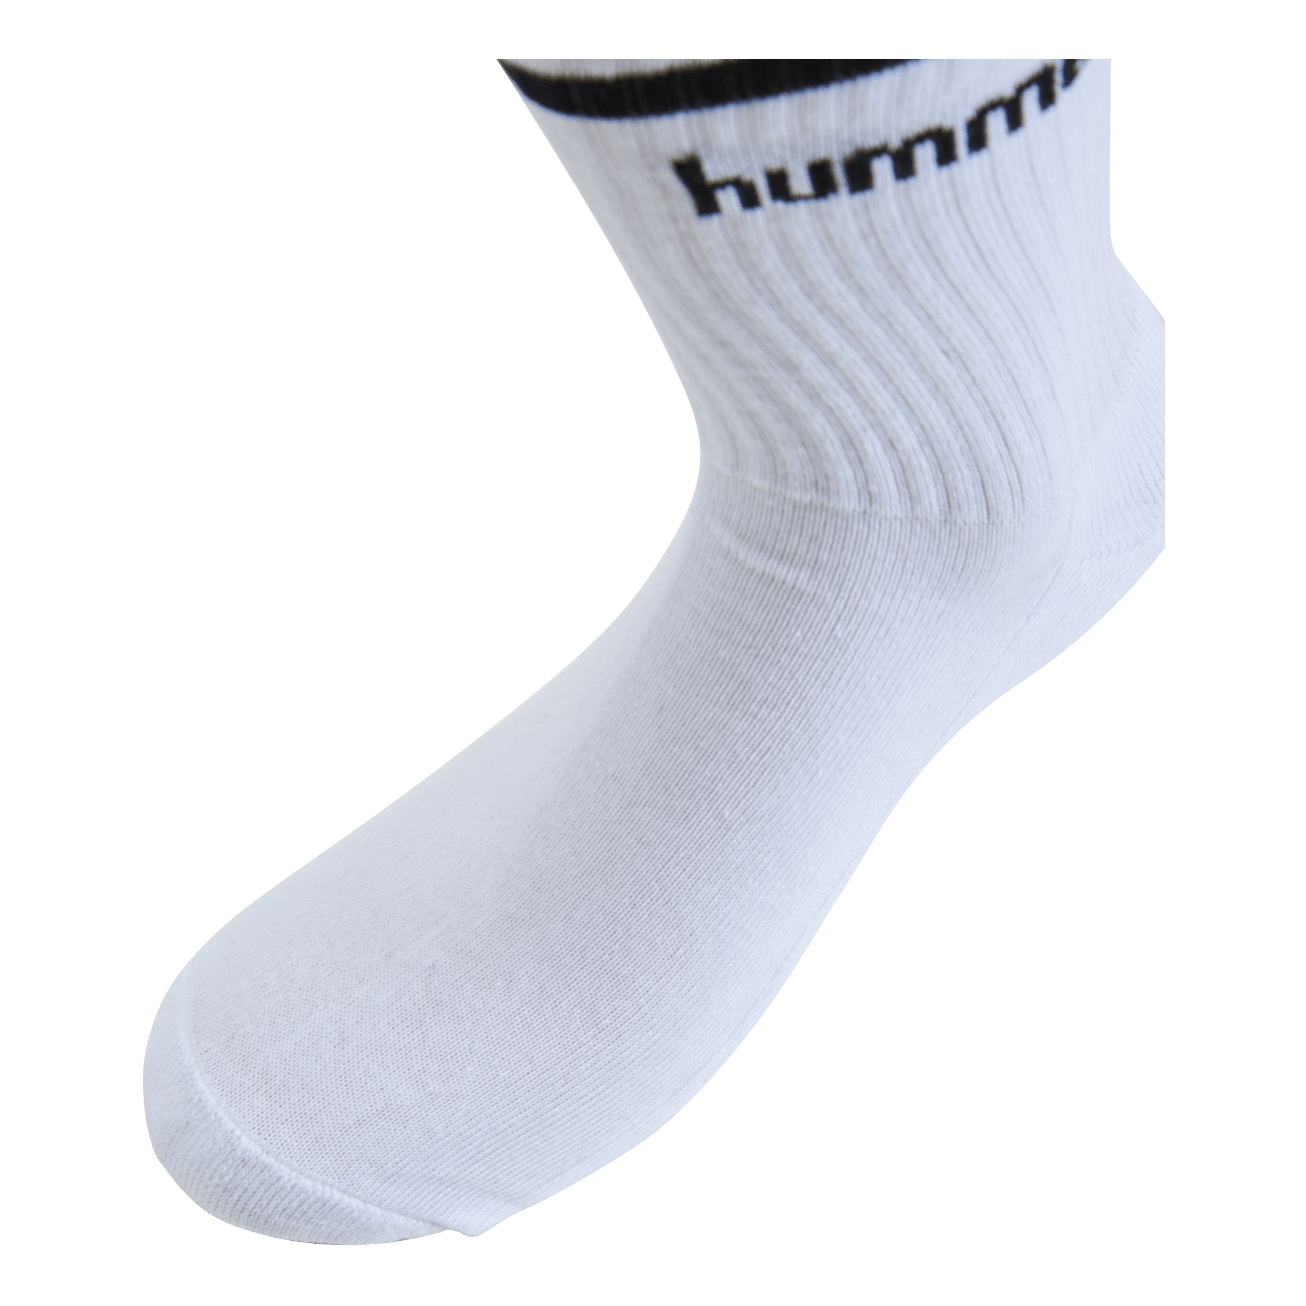 Hmlretro A-pack Socks Mix White/black